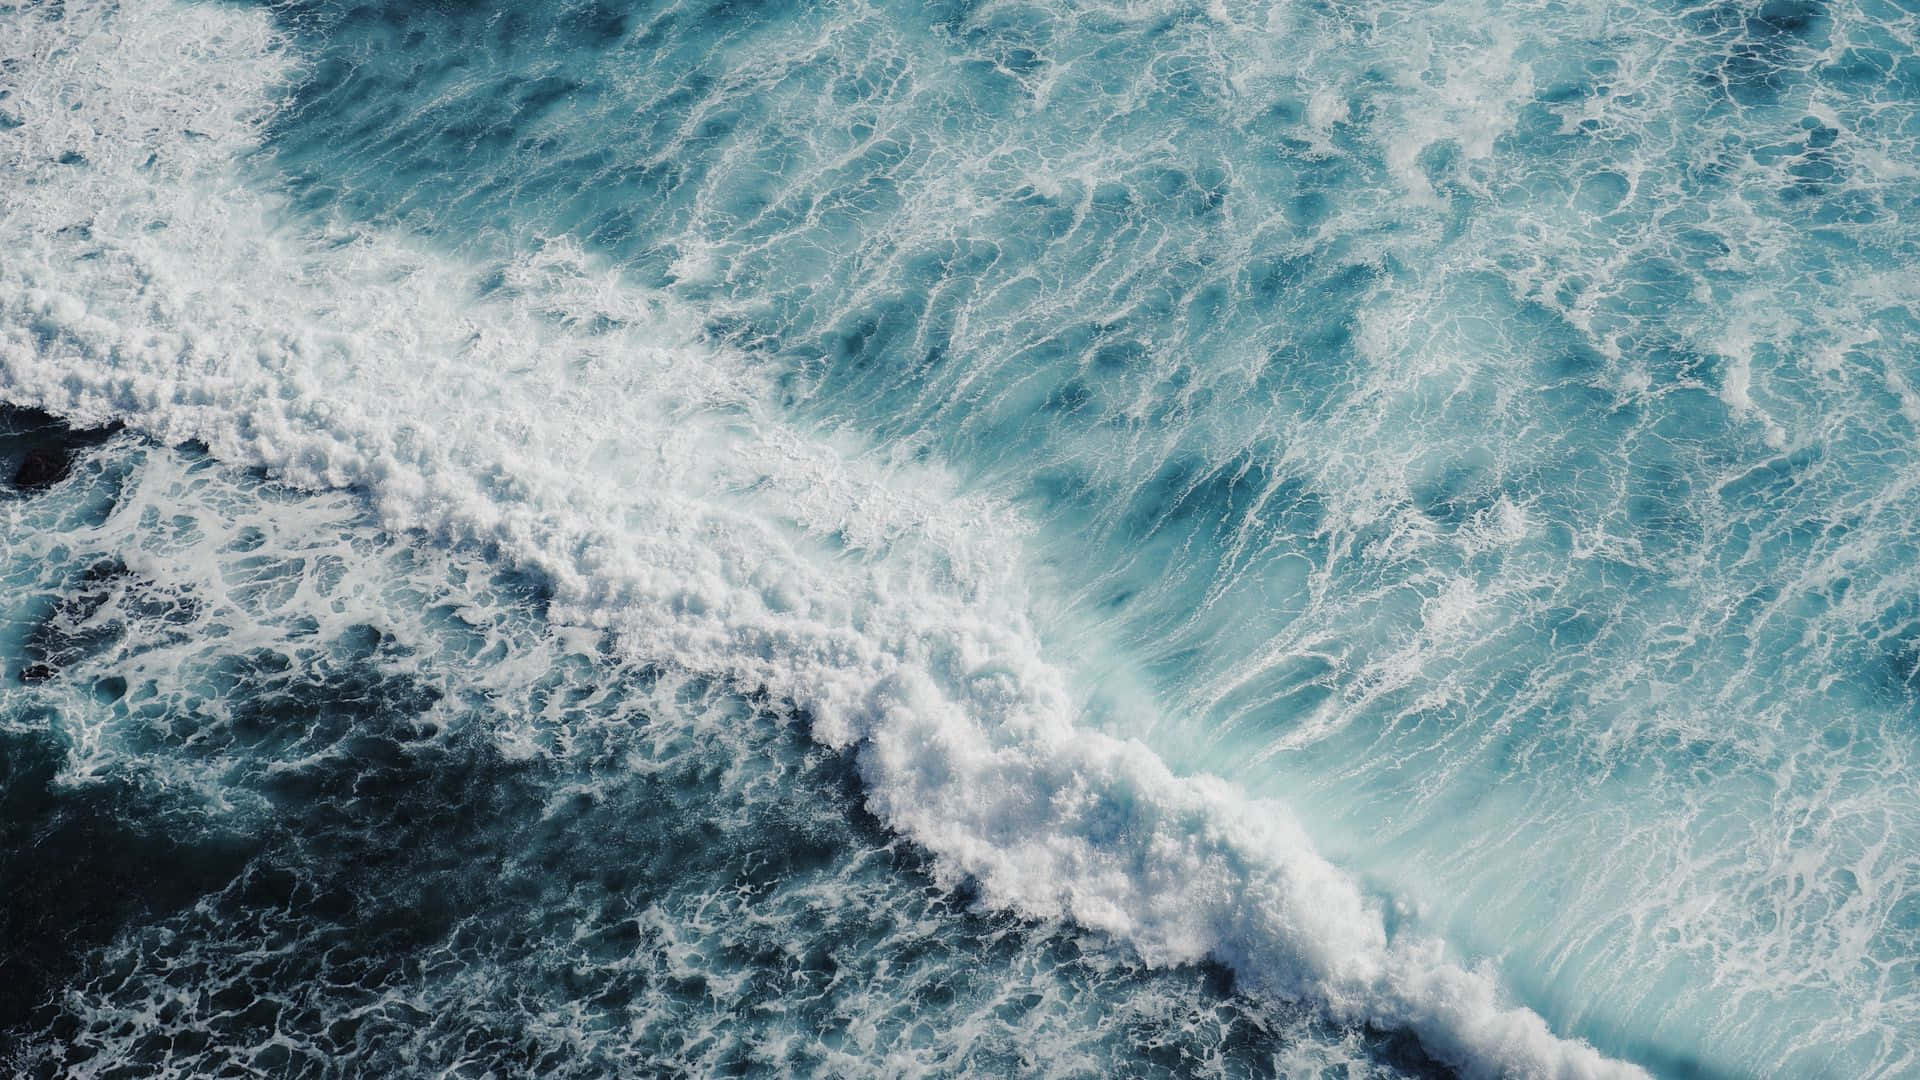 Ocean Waves Aerial View.jpg Wallpaper